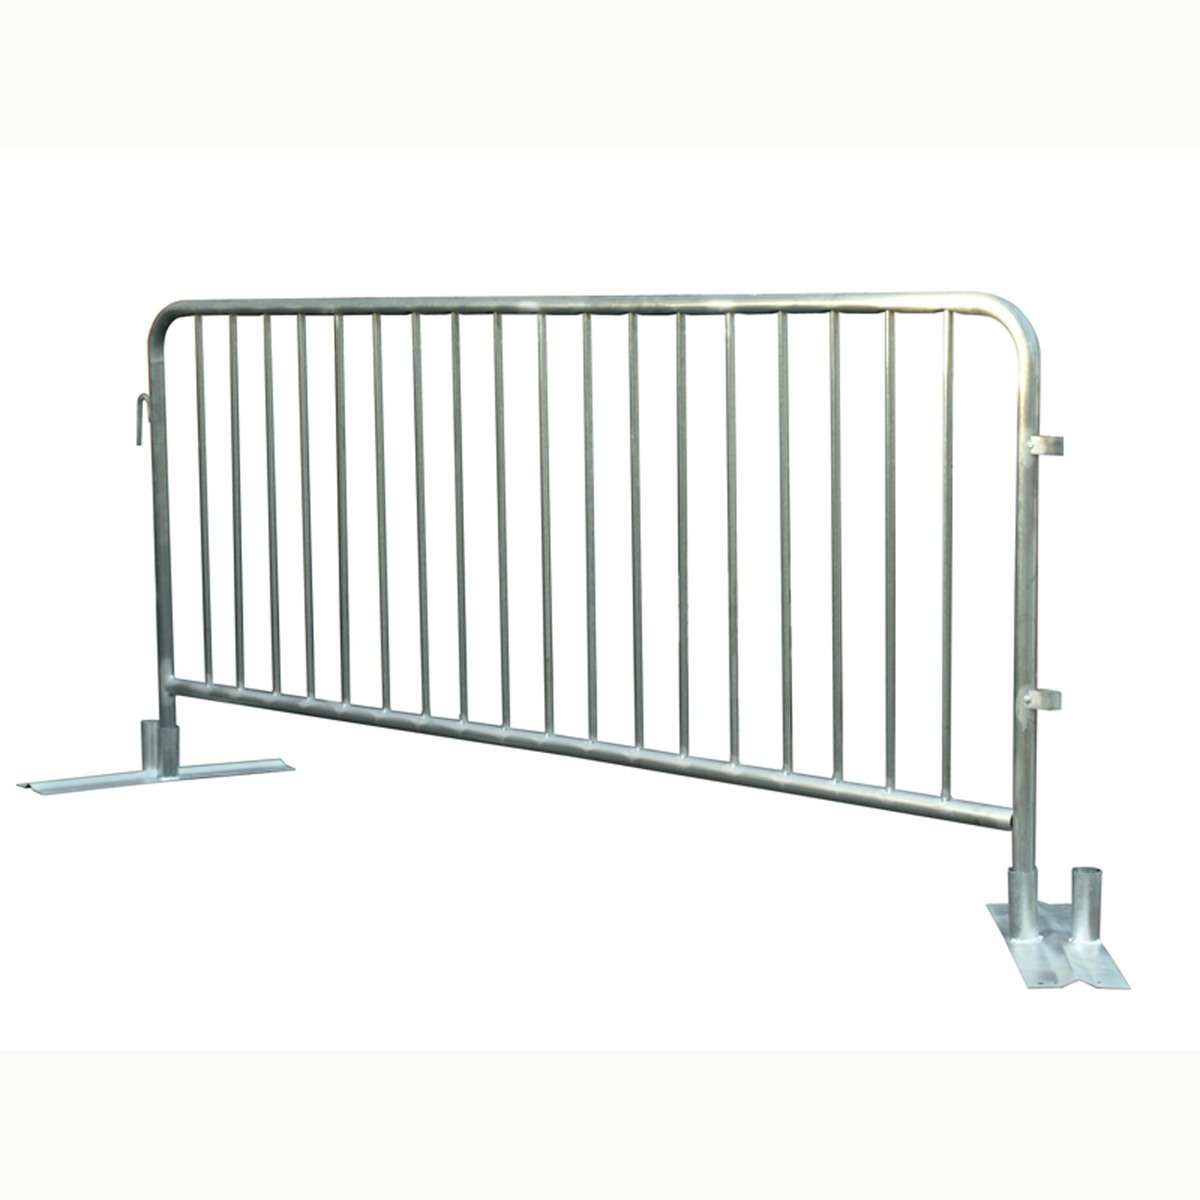 Taas nga kalidad nga Crowd Control Barrier ug Steel Material BS Standard Hot Galvanized Police Crowd Control Fence